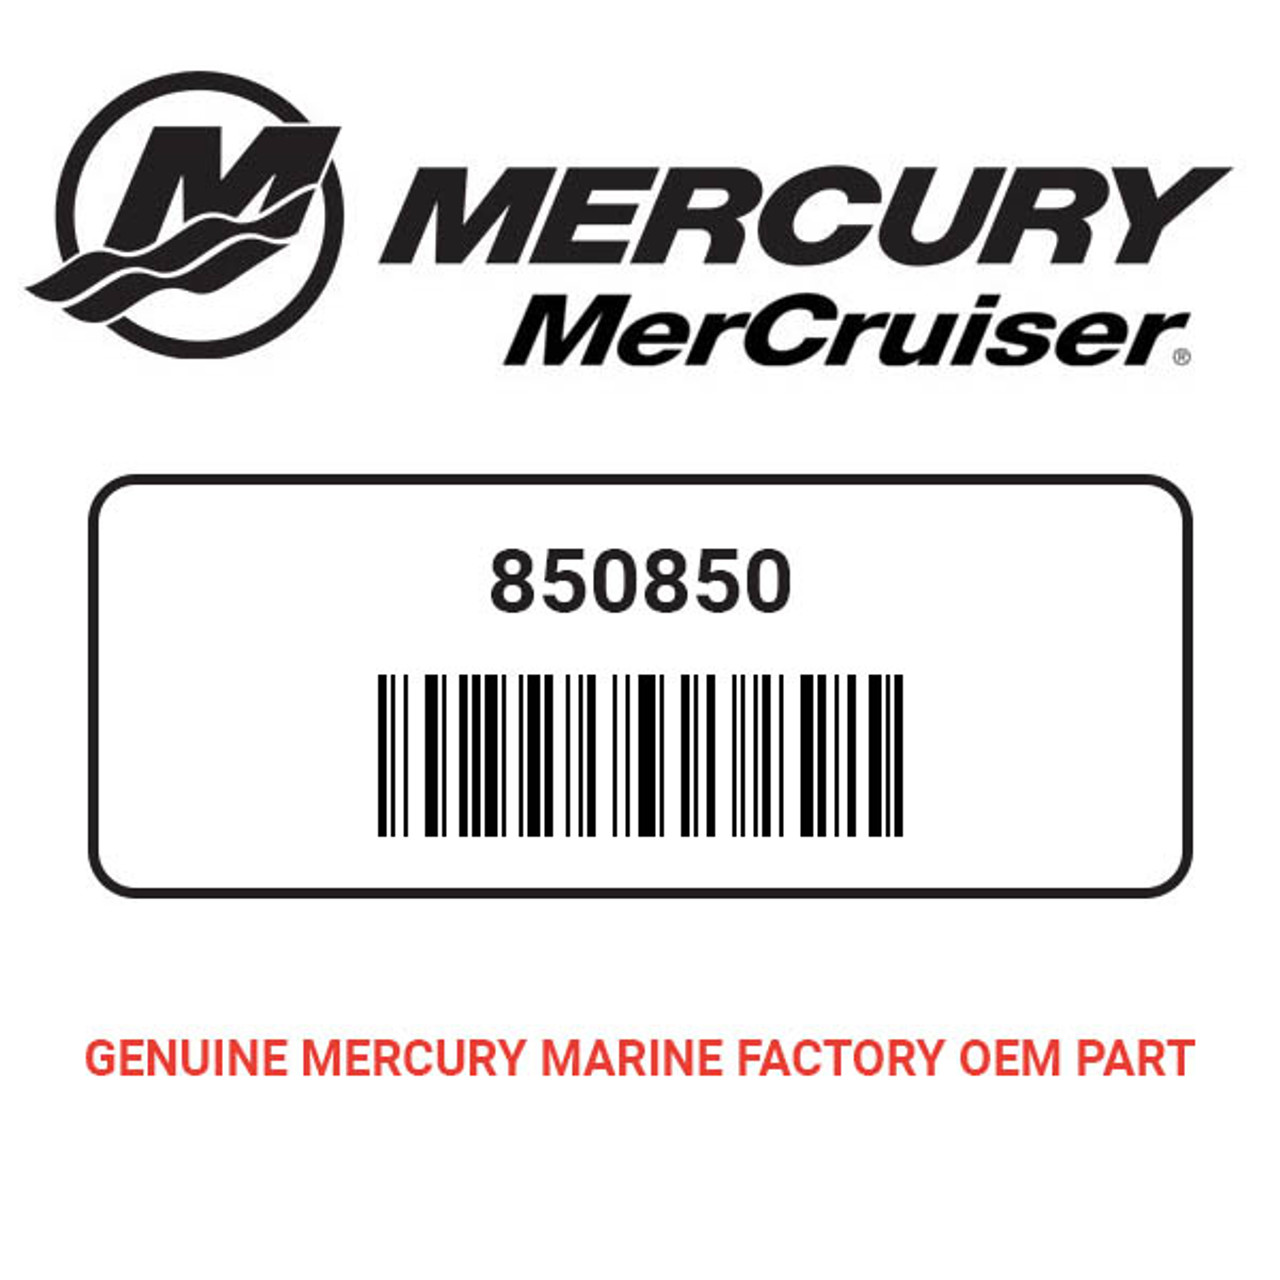 New Mercury Mercruiser Quicksilver Oem Part # 26-850850 Seal